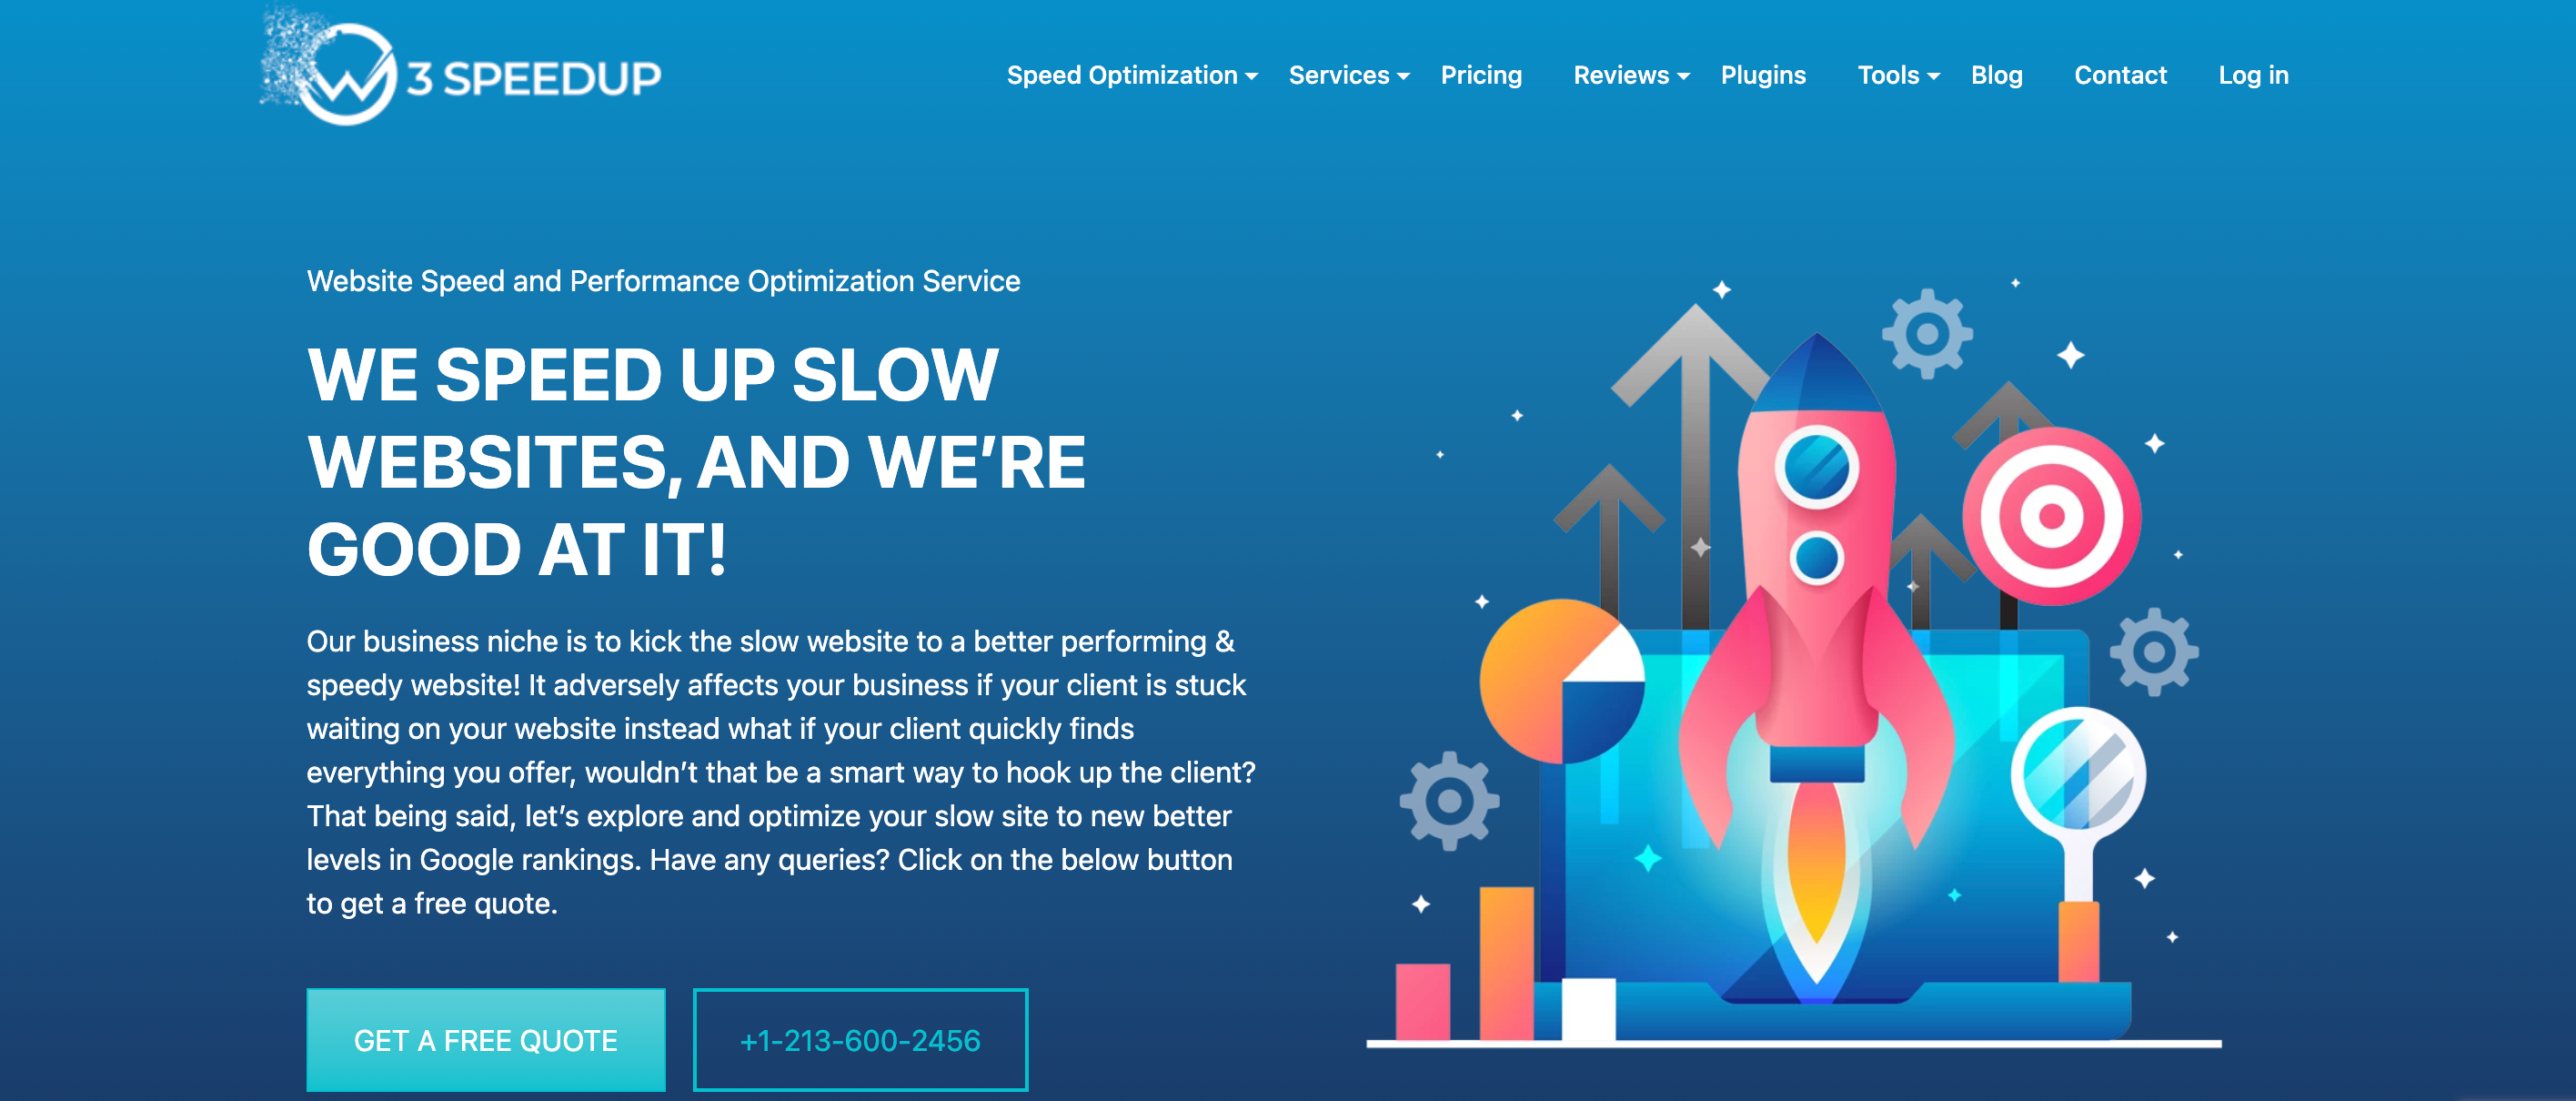 W3 SpeedUp provide WordPress speed optimization services 